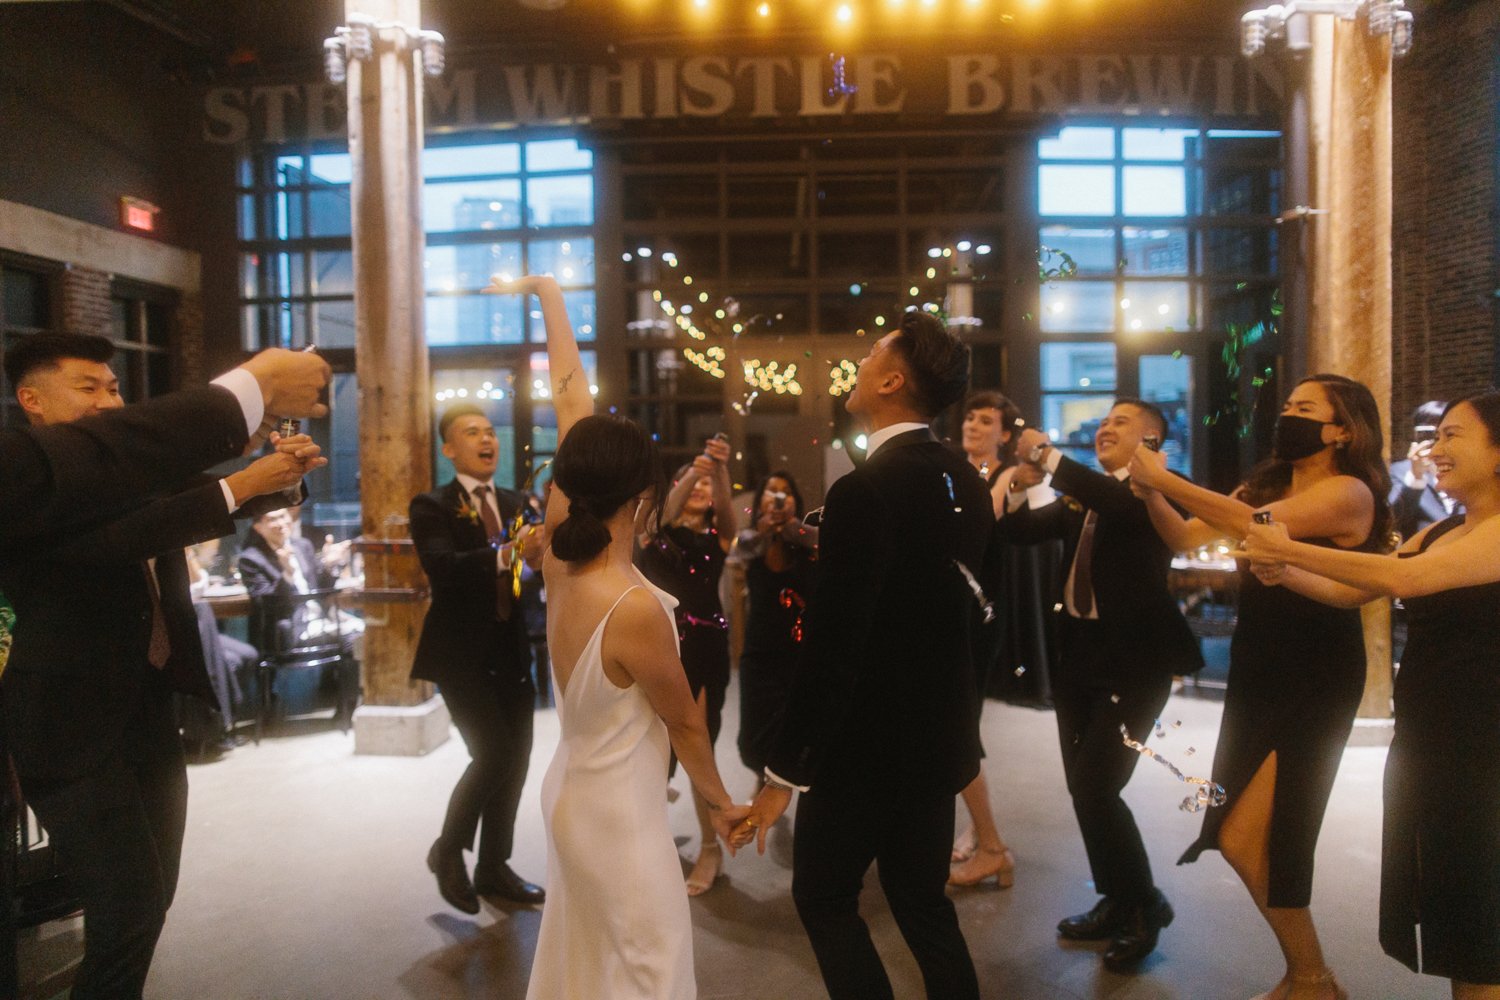 Steam-Whistle-Brewing-Best-Alternative-Wedding-Venue-Photos-Toronto-86.JPG